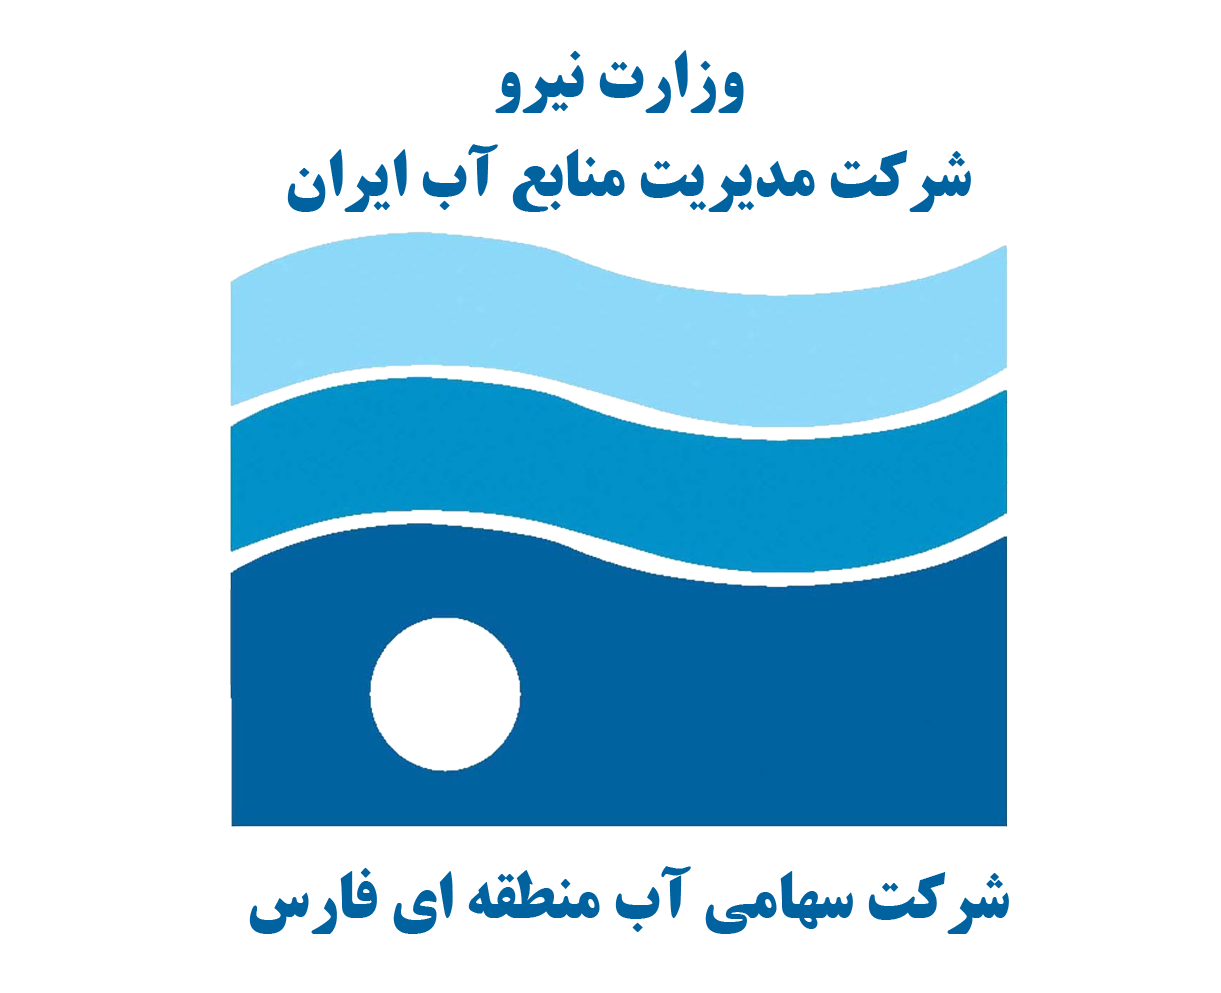 ارزیابی شبکه پایش چاه های مشاهدهای در آبخوان های انتخابی زیر نظر شرکت آب منطقه ای فارس با مدل سازی پیشرفته آماری